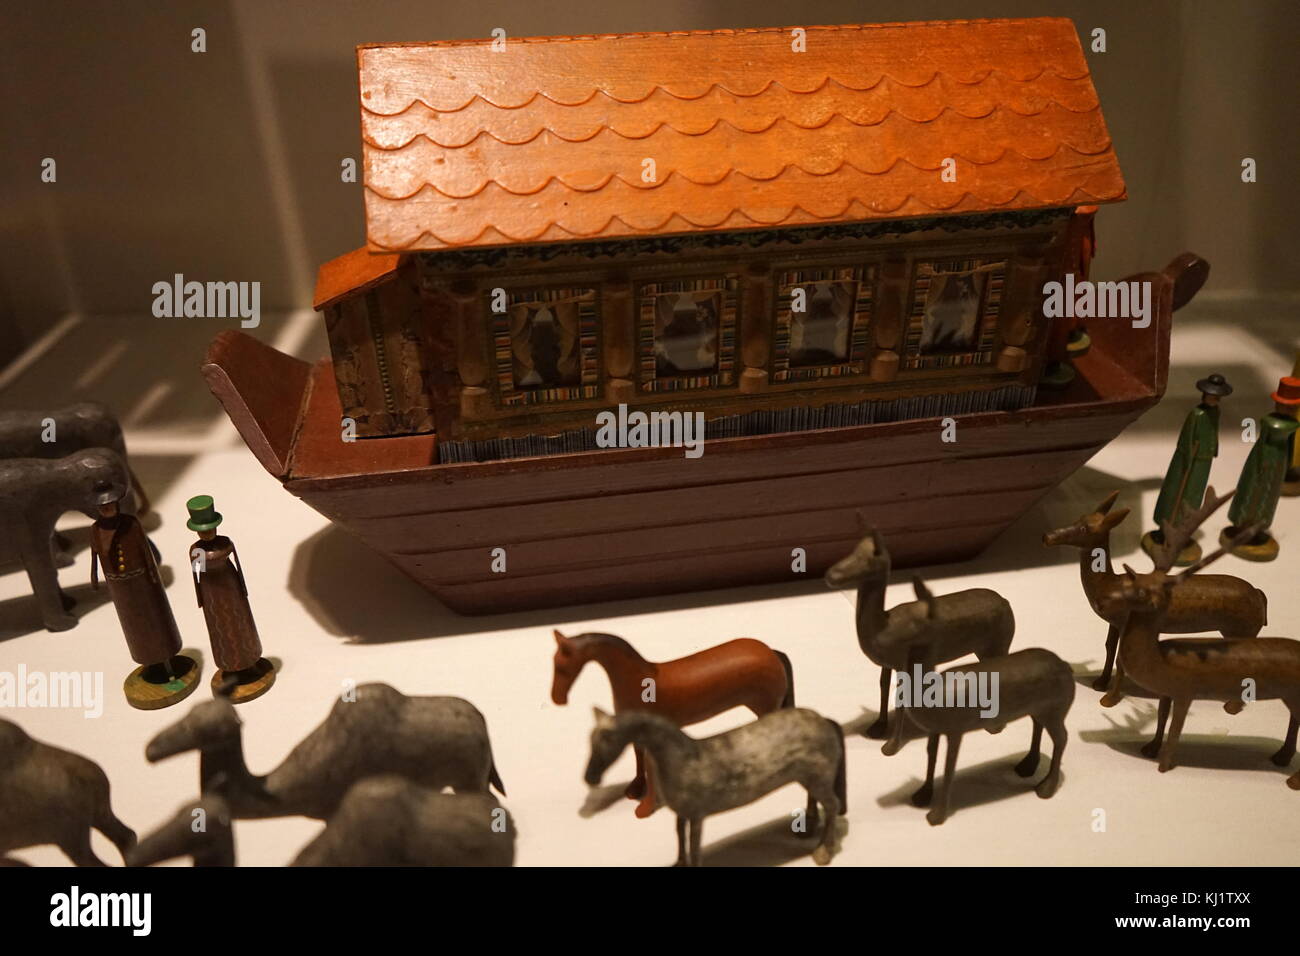 Figurines en bois utilisées pour recréer l'histoire de l'arche de Noé, les animaux sont présentés ici par paires prêt à bord de l'arche. En date du 19e siècle Banque D'Images